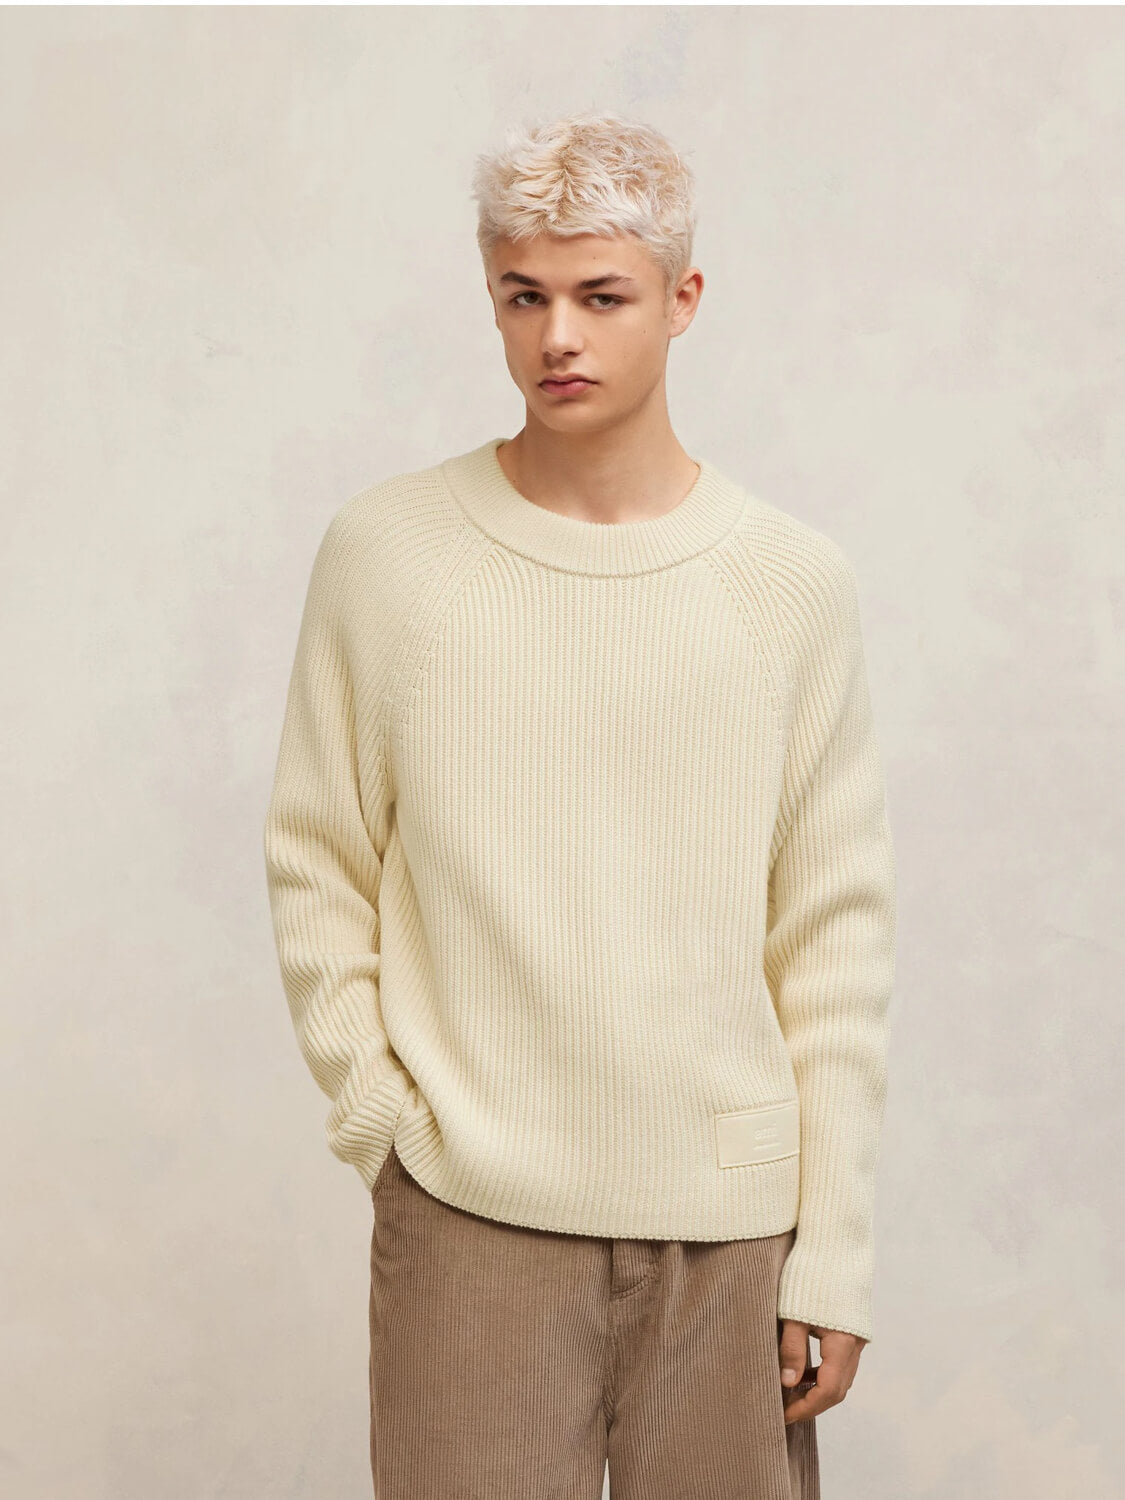 AMI Paris Pullover & Strick | gerippter Pullover ecru-beige AMI Label | HKS024 KN0031 185 / ADAM/EVE